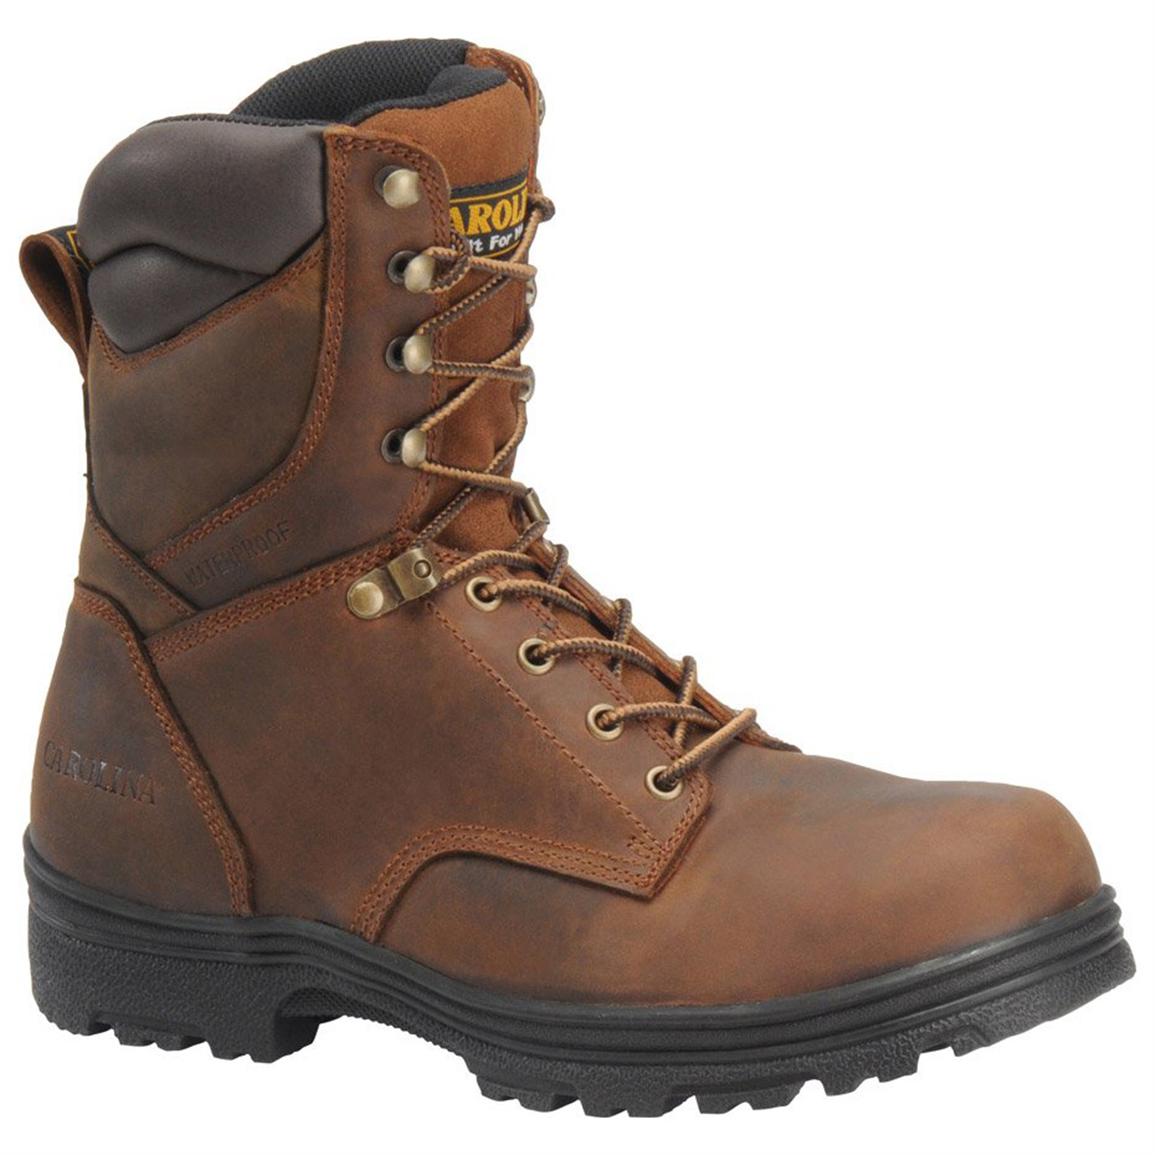 Men's Carolina® SVB 8 inch Steel Toe Waterproof Work Boots, Copper